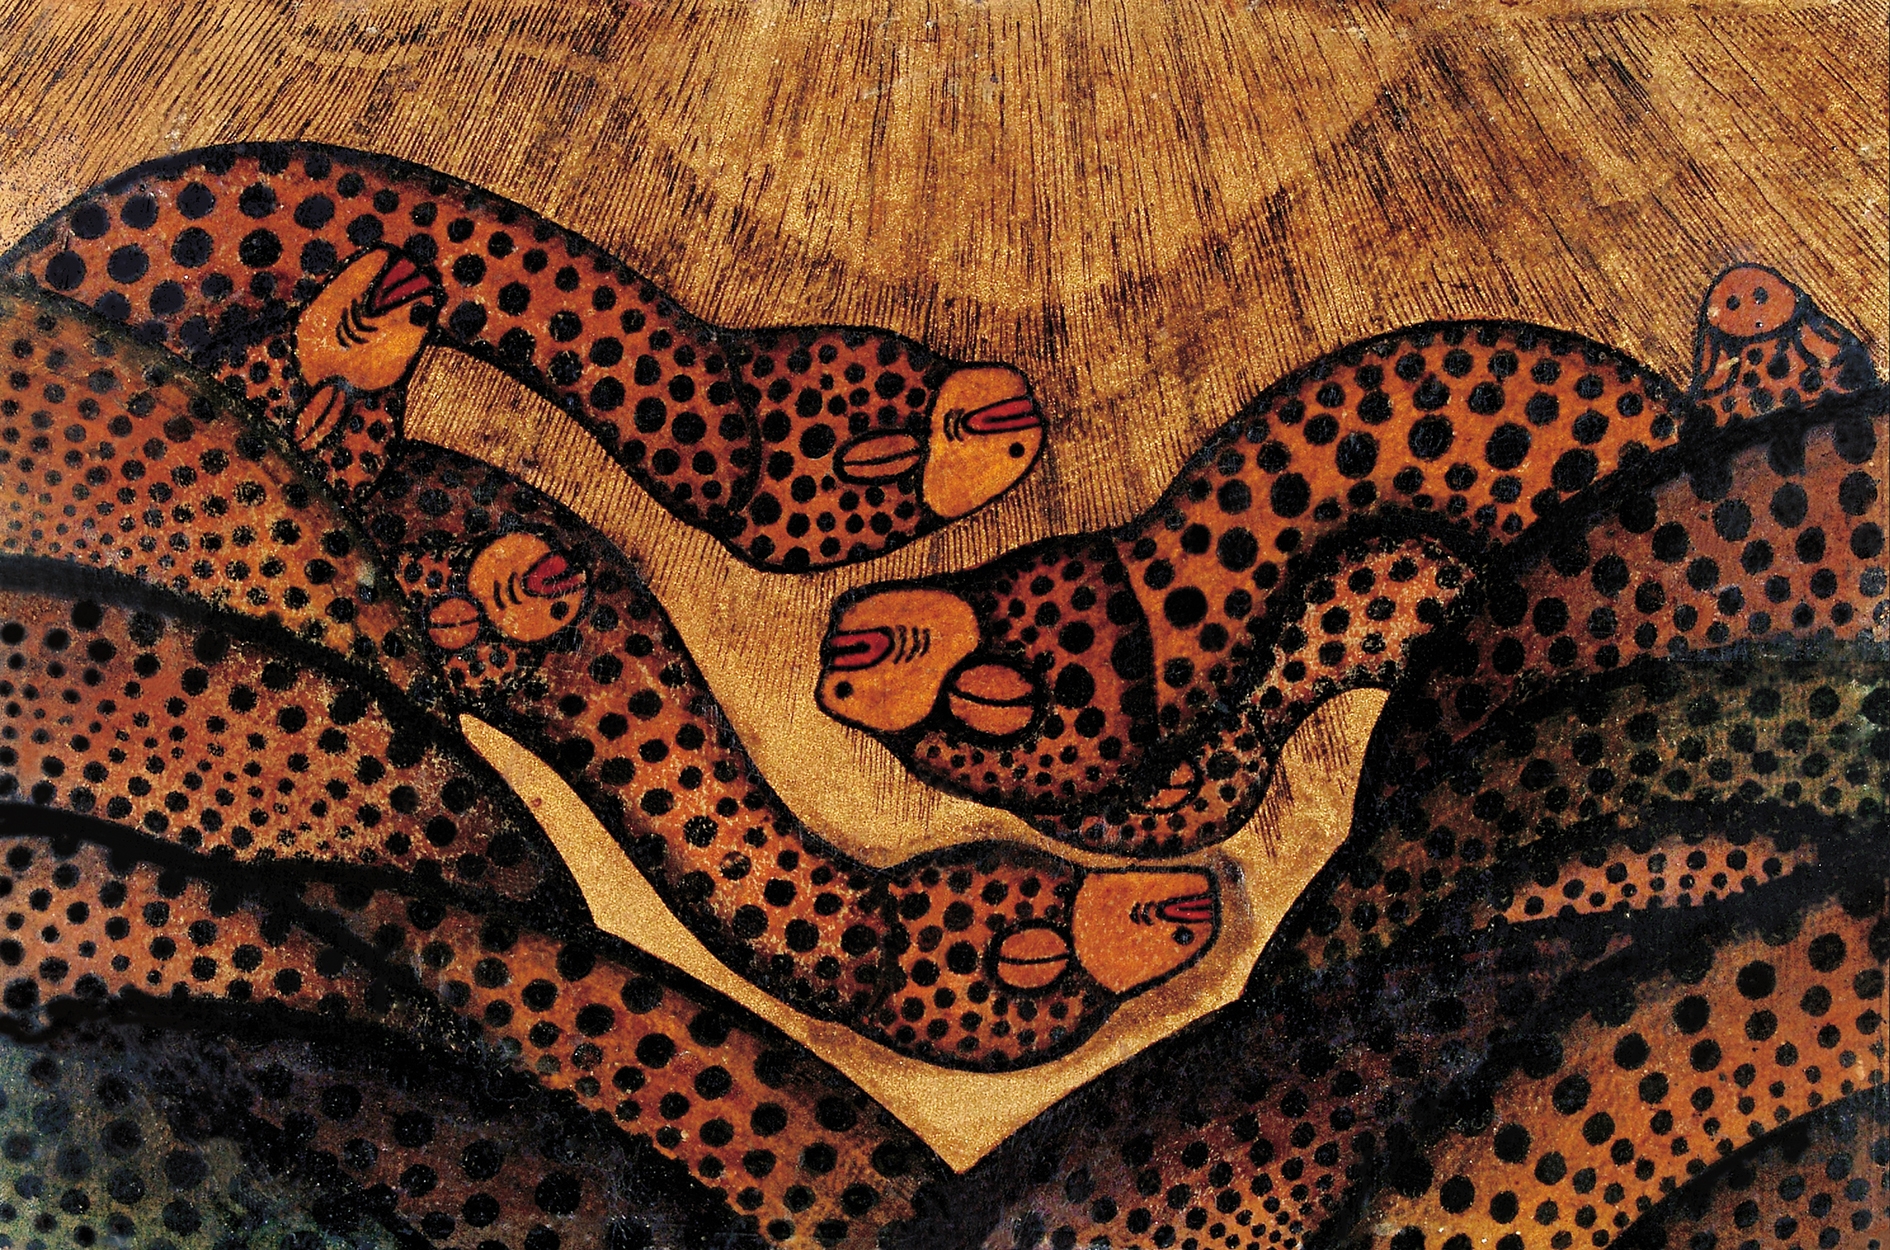 Mokry Mészáros Dezső (1881-1970) Saint Snakes, 1910